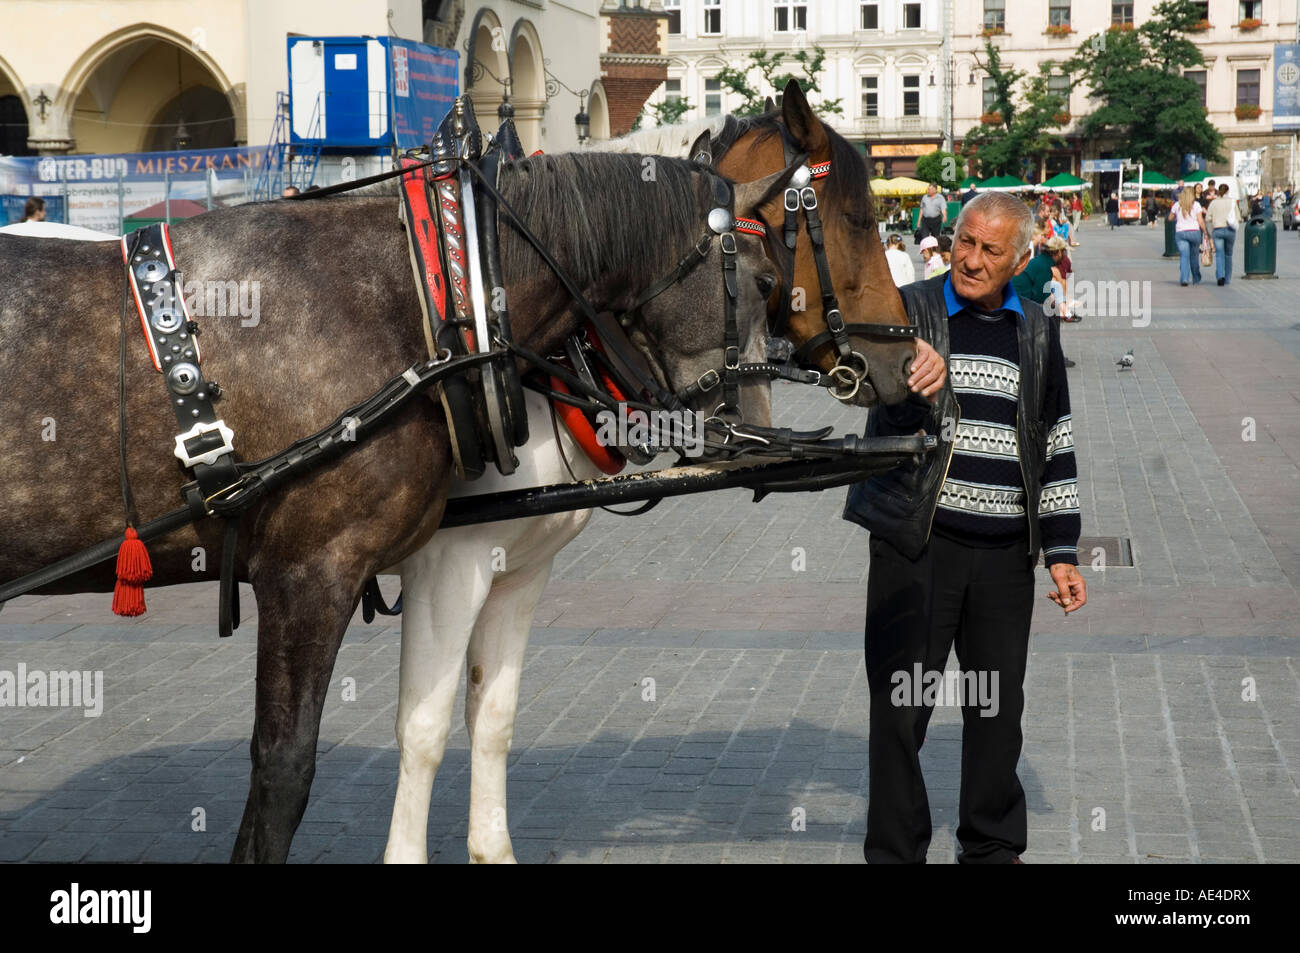 Cavallo e Carrozza nella piazza principale del mercato (Rynek Glowny), la Città Vecchia (Stare Miasto), Cracovia (Cracovia), Polonia, Europa Foto Stock